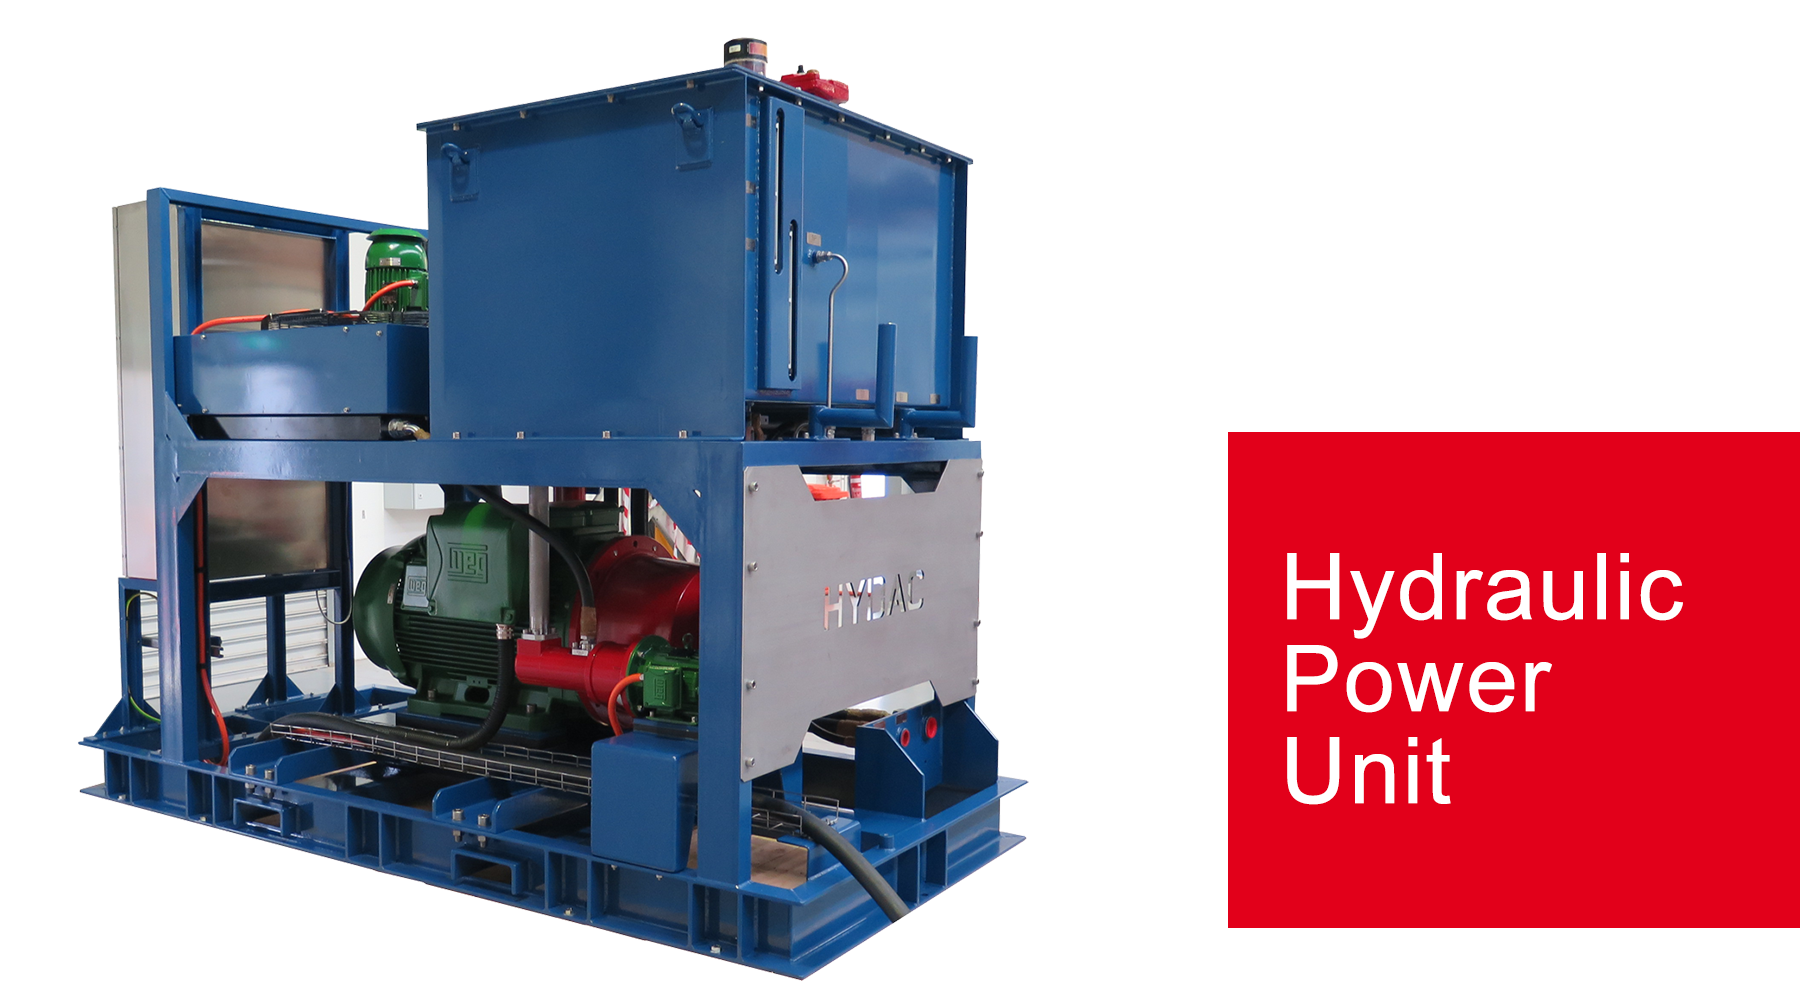 HYDAC Australia, fluid power, hydraulics, hydraulic power unit, filtration, accumulators, hydraulic accumulators, hydraulic pumps, filter, process filtration, hydraulic systems